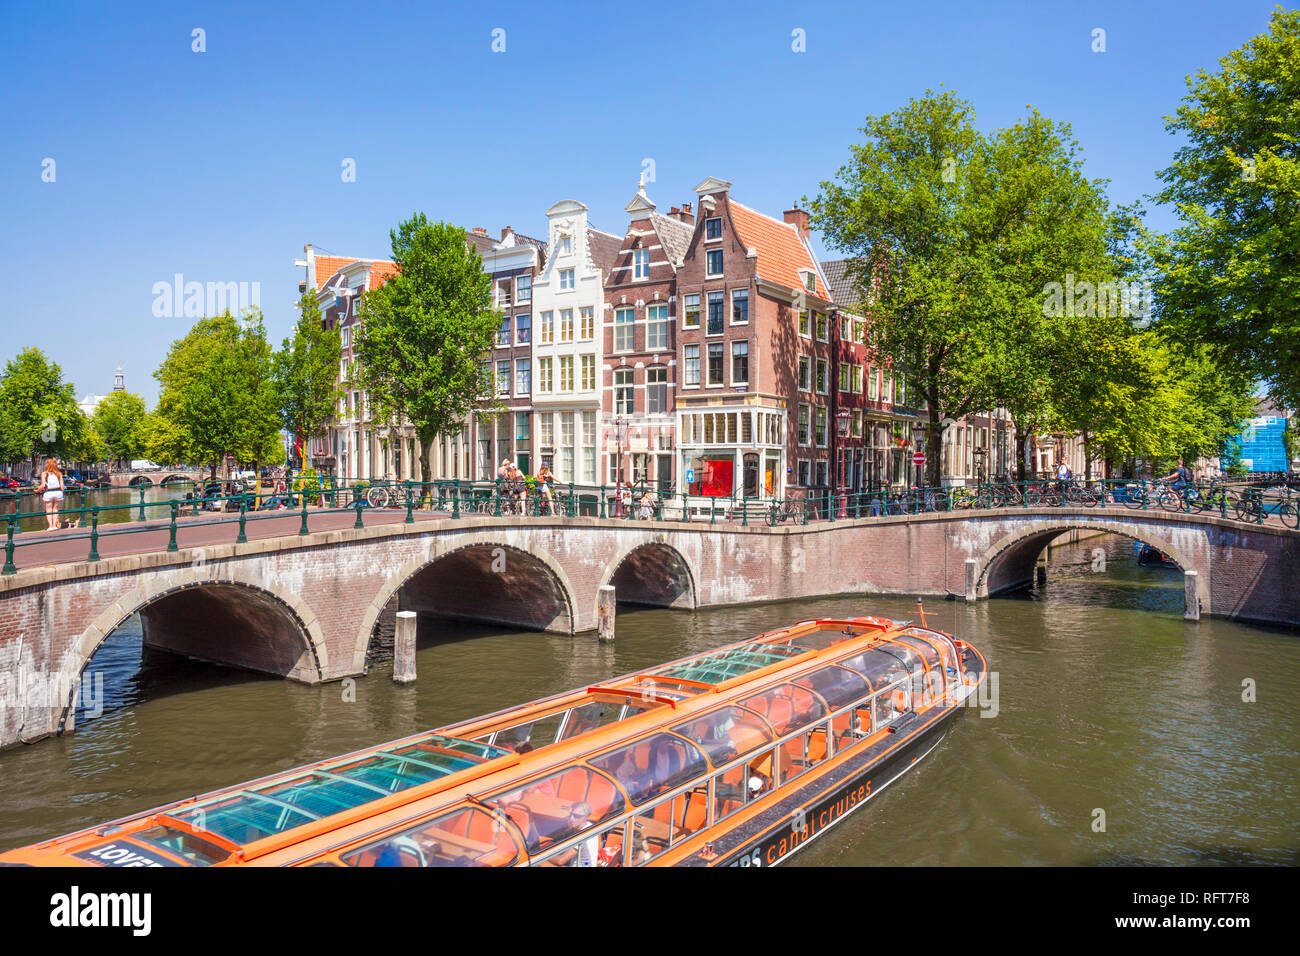 Excursión por los canales y puentes de barco en la intersección de las calles Canal y canal Keizergracht Leidsegracht, Amsterdam, Holanda Septentrional, Holanda, Europa Foto de stock